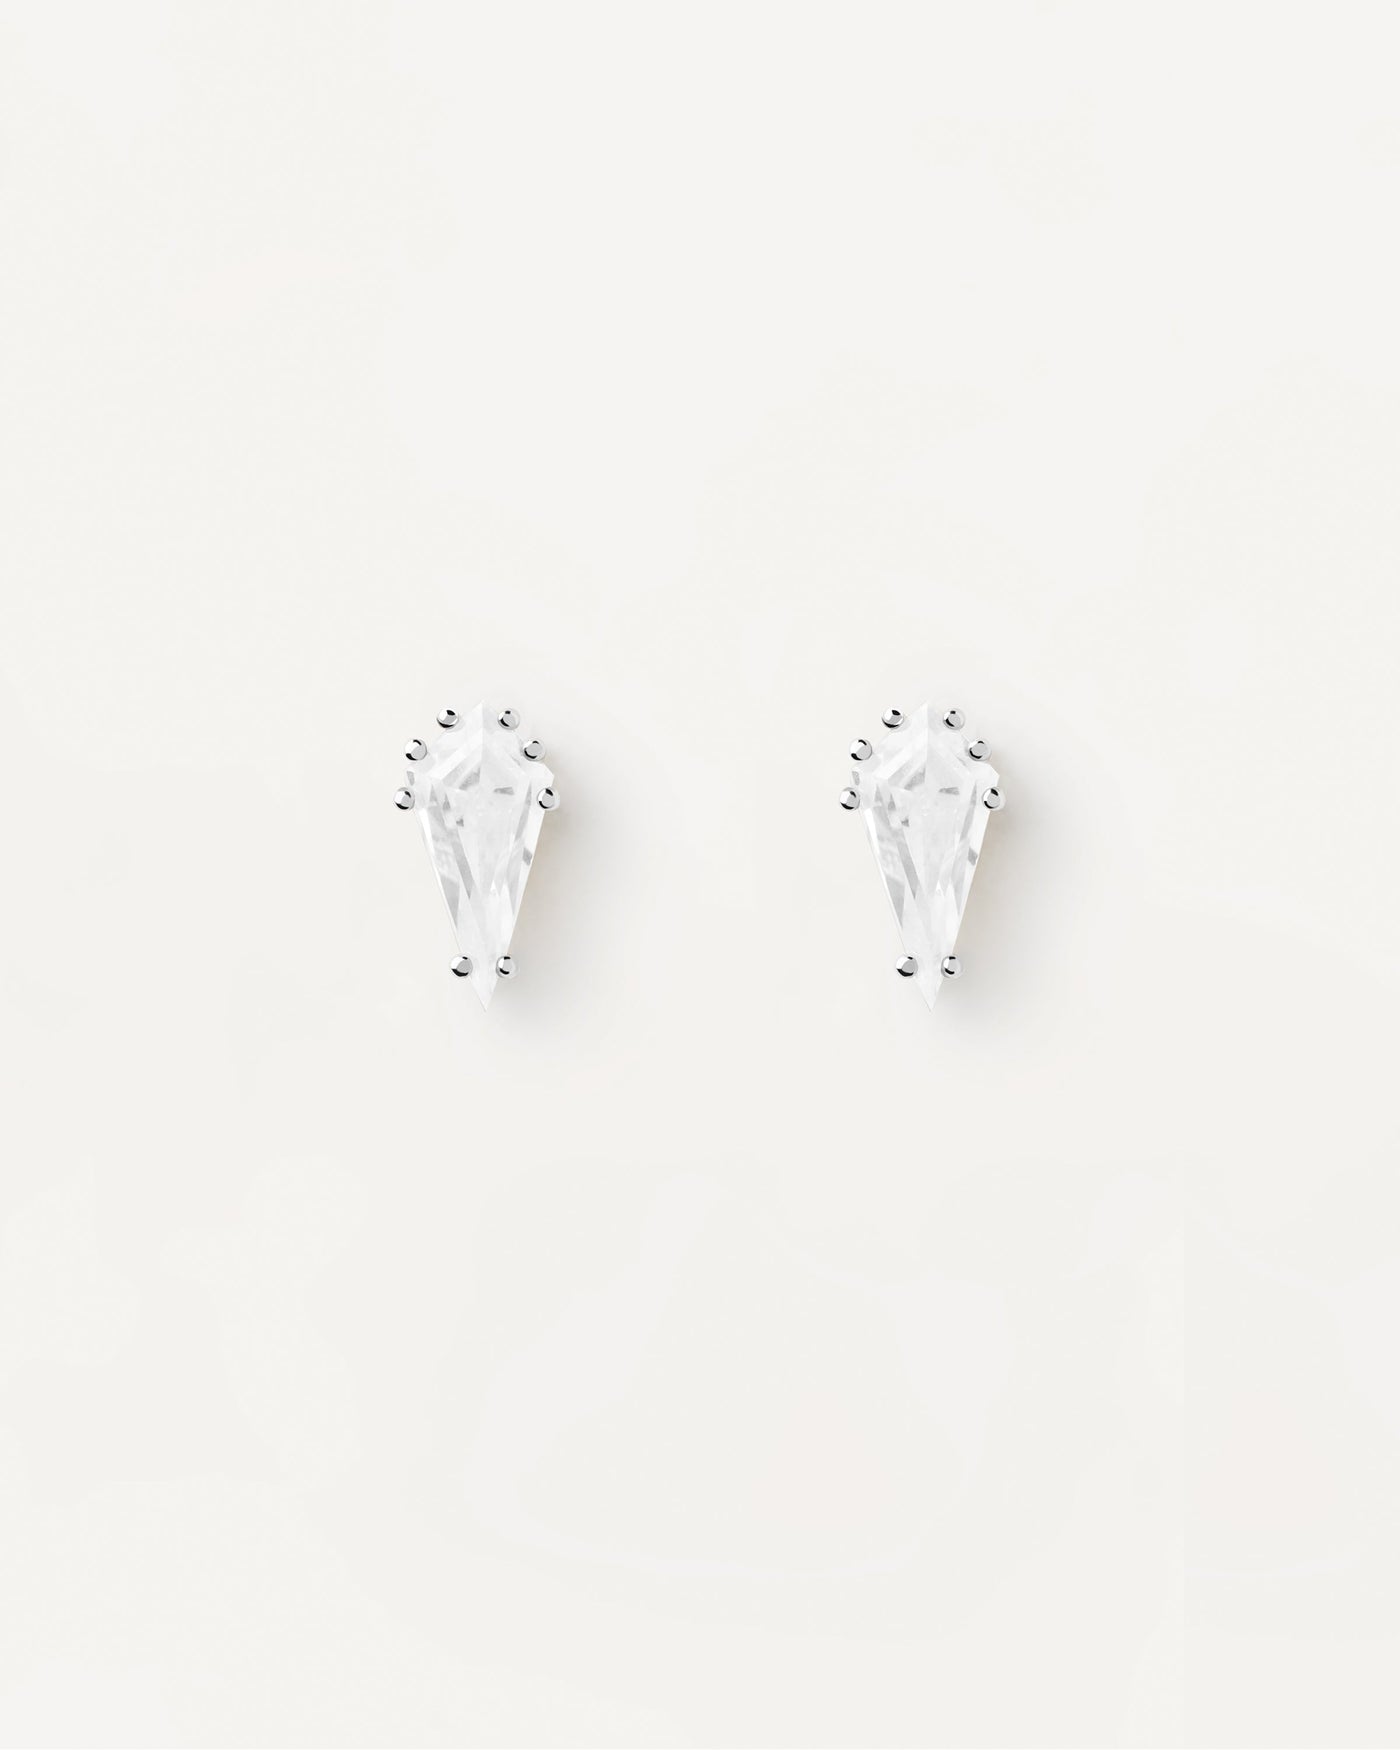 Single stud earrings  ear piercings